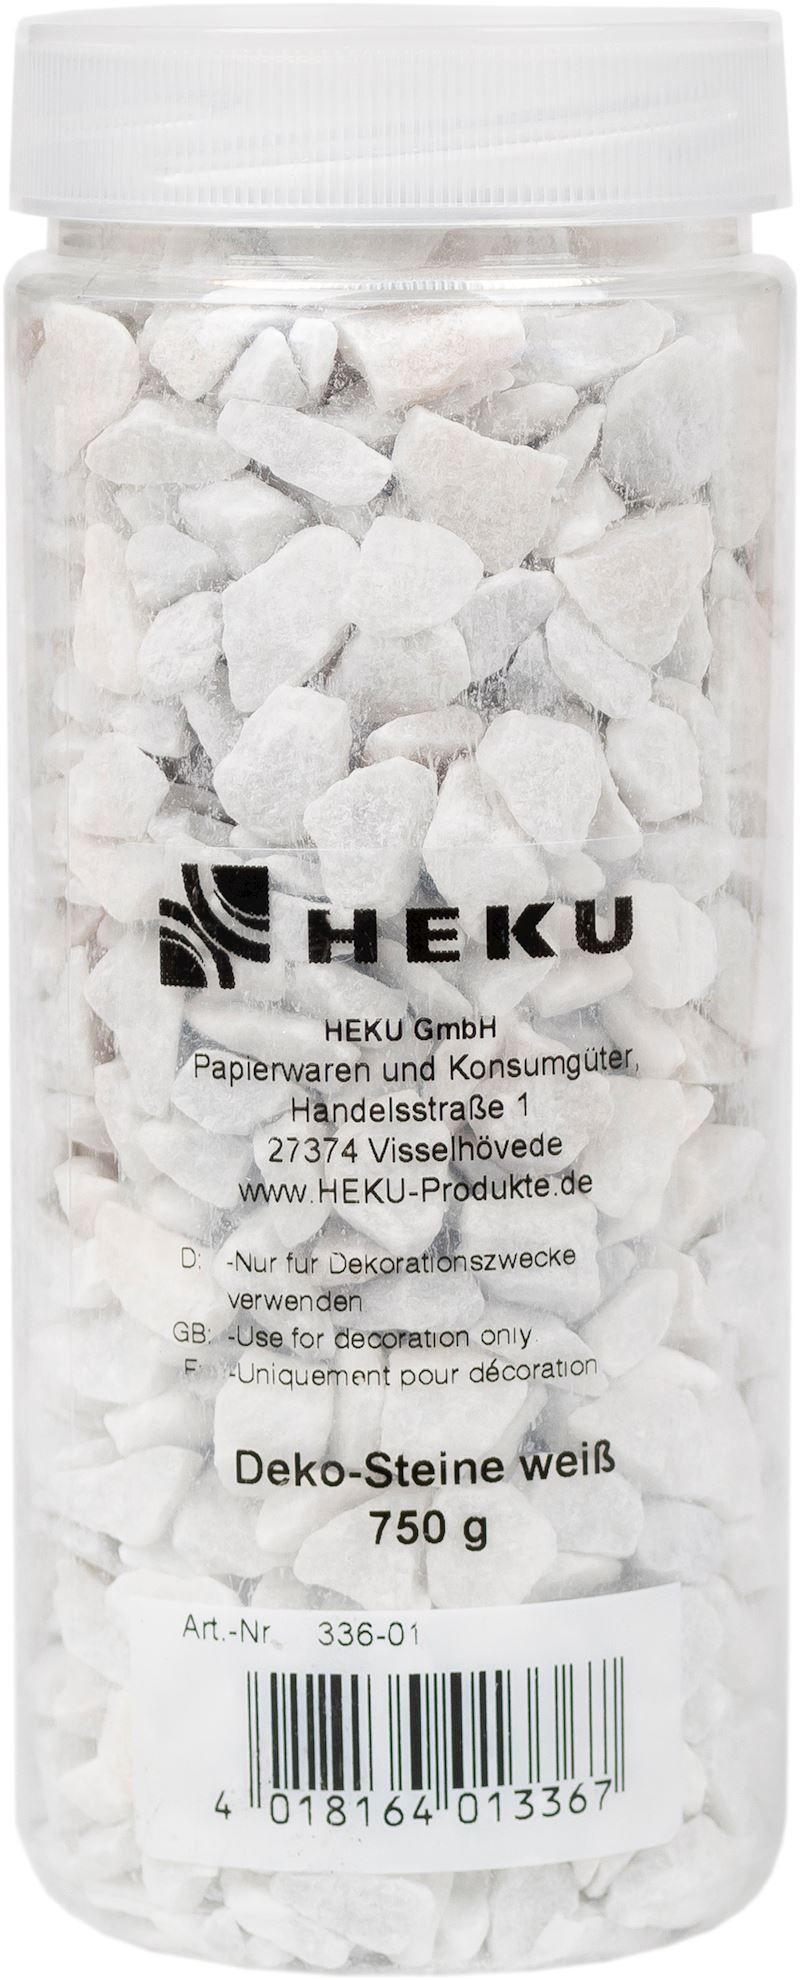 Deko-Steine in Dose 9-13 mm, 750 g, weiss